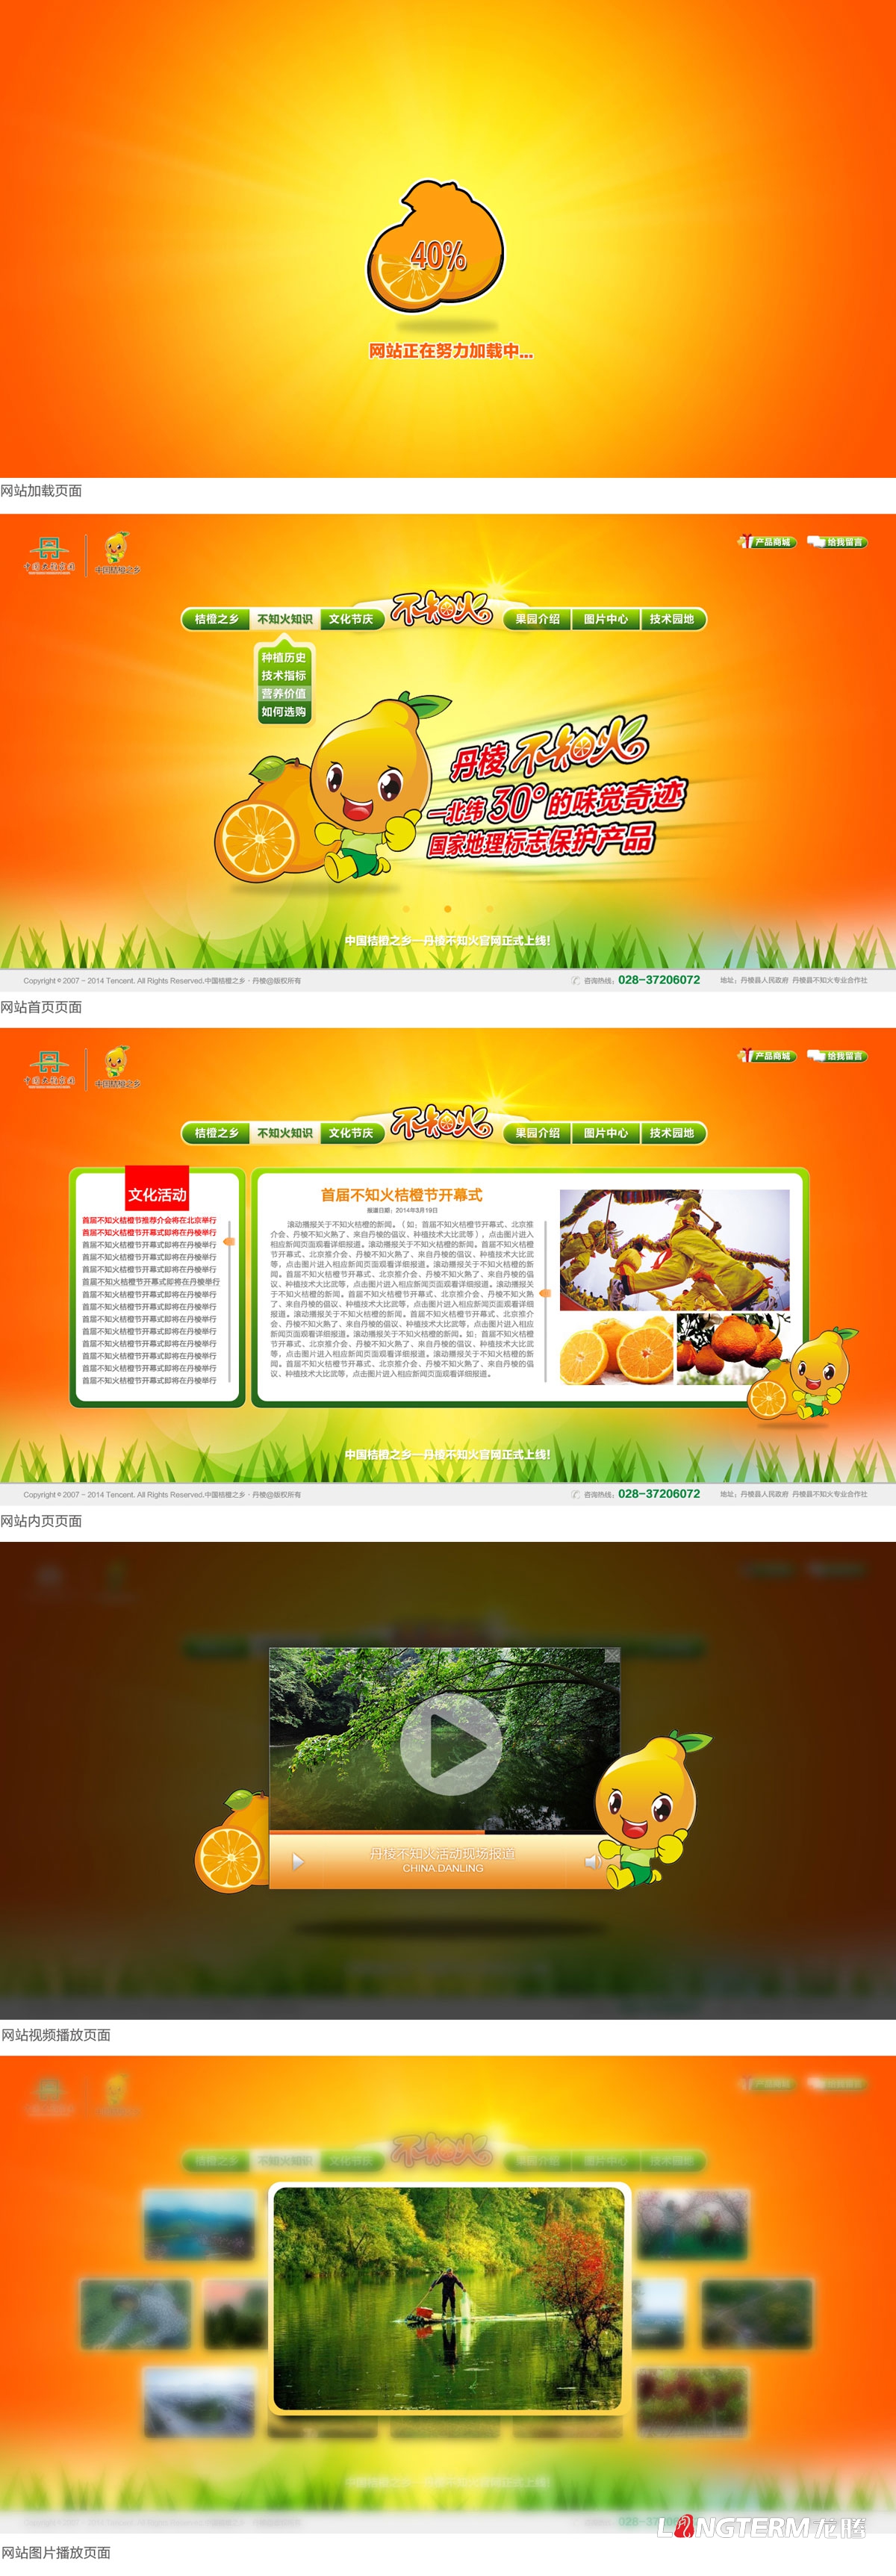 中国桔橙之乡官网设计|不知火爱媛桔橙官方宣传网站设计建设制作